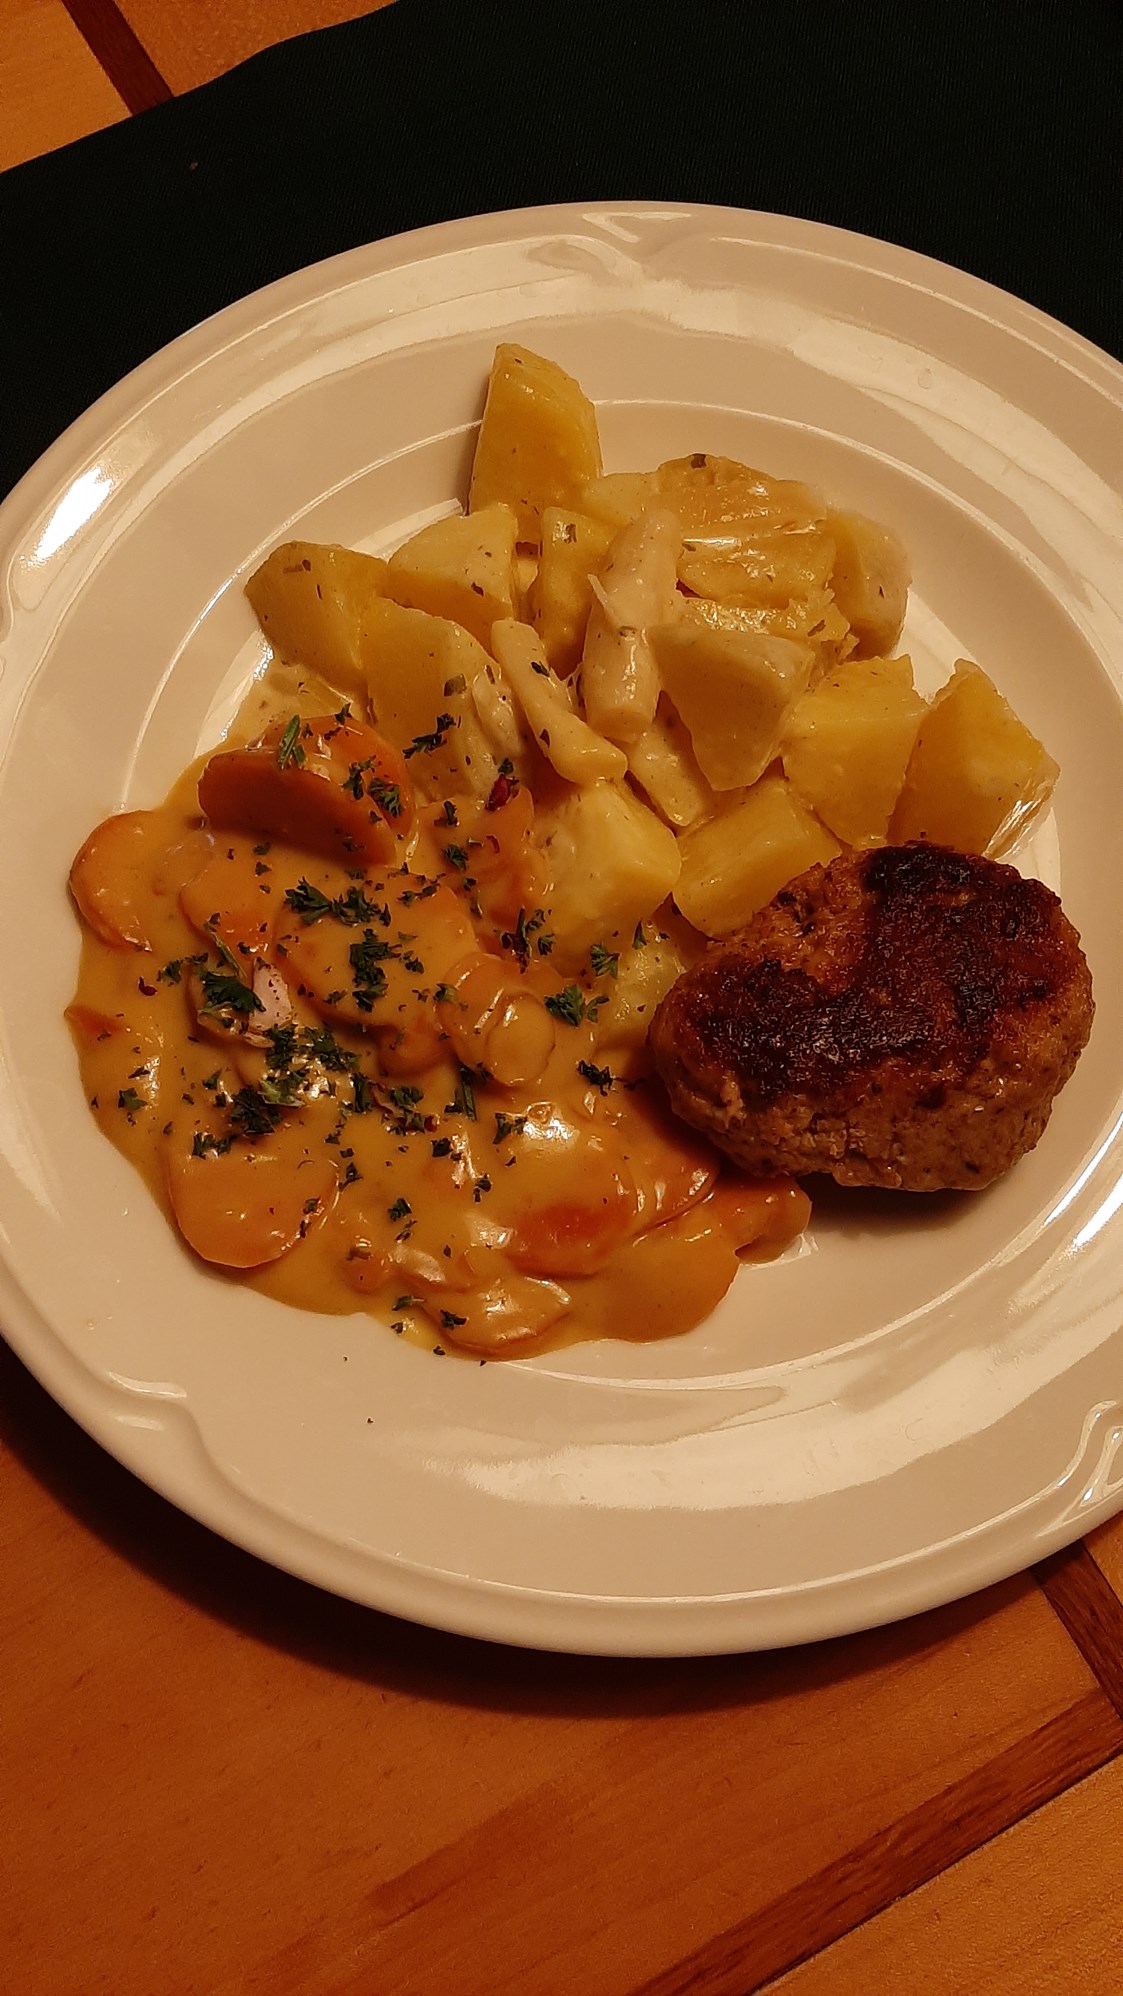 Restaurant: Böpfer (Sophies Fleischküchle) mit Butterkartoffeln und Karotten-Rahmgemüse
12.90 € - SophienBäck